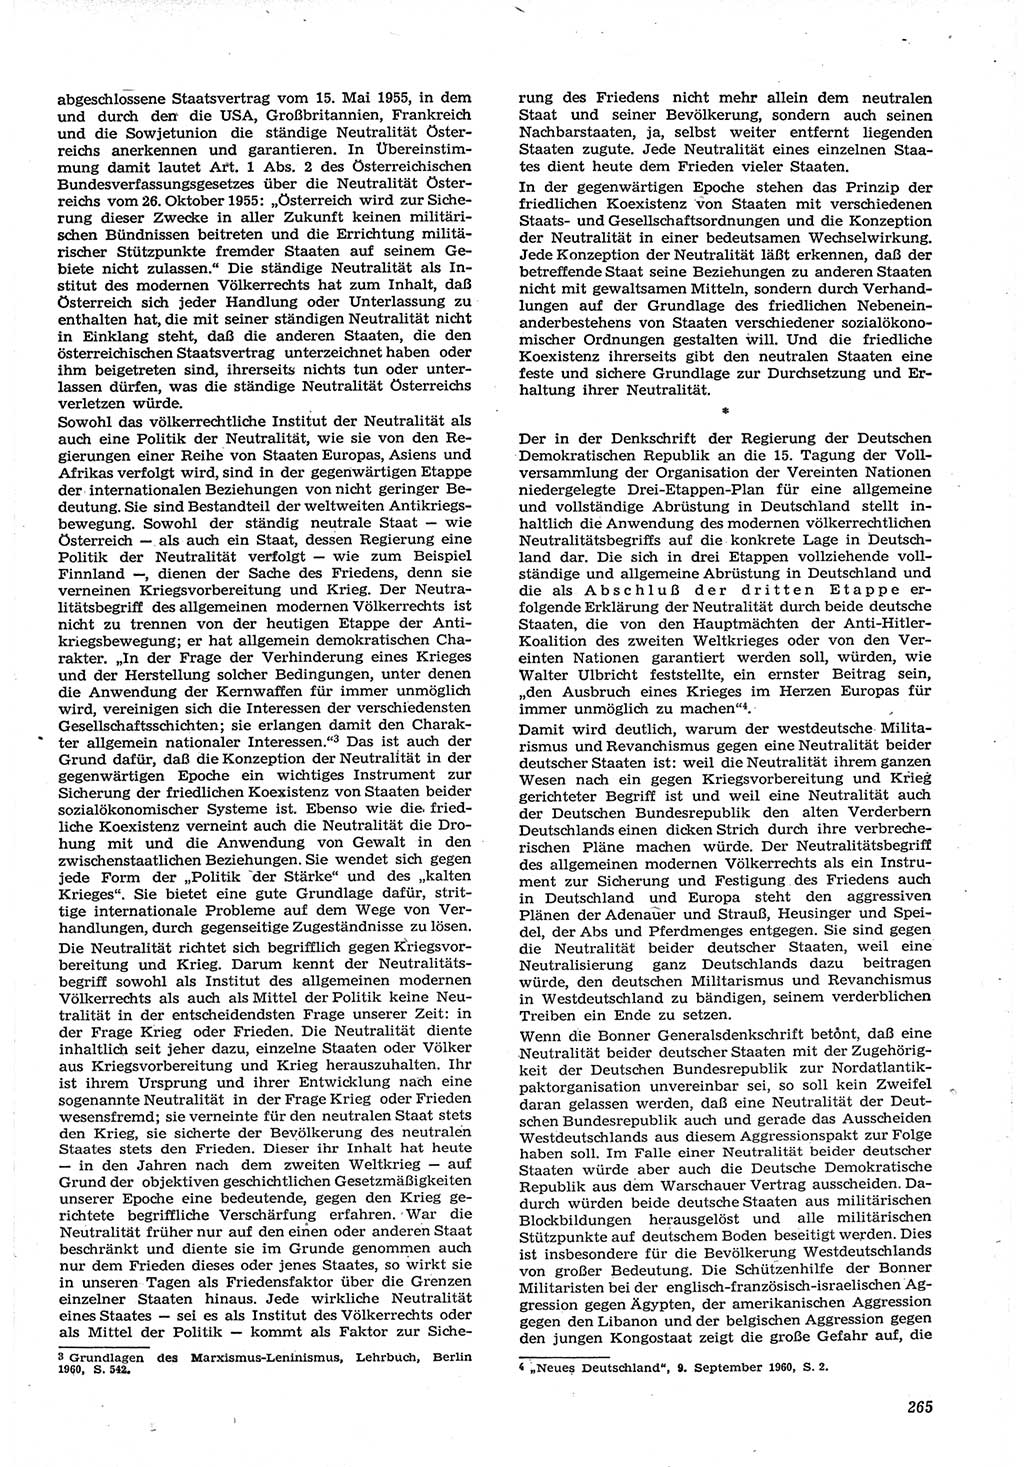 Neue Justiz (NJ), Zeitschrift für Recht und Rechtswissenschaft [Deutsche Demokratische Republik (DDR)], 15. Jahrgang 1961, Seite 265 (NJ DDR 1961, S. 265)